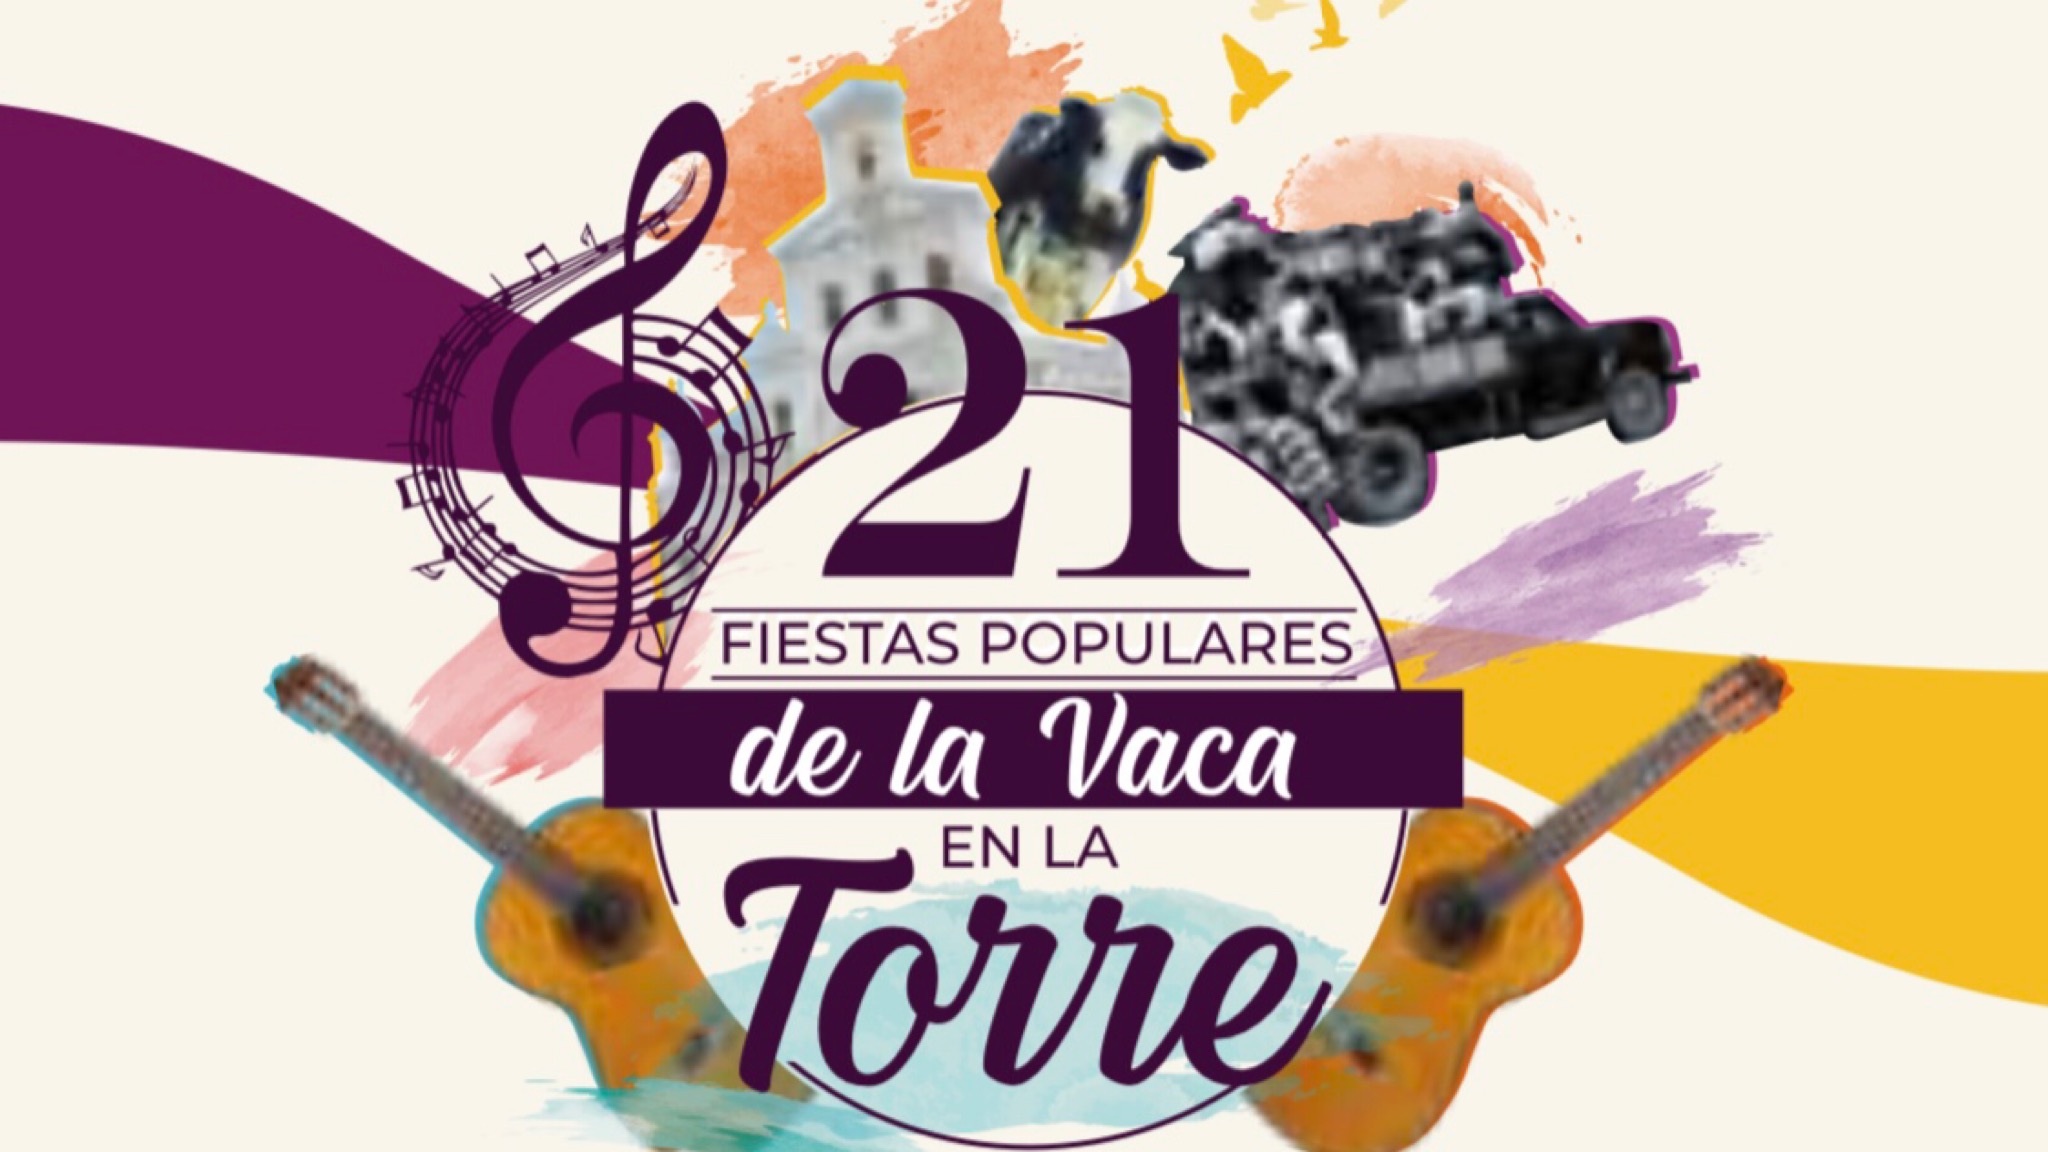 Prográmese para las tradicionales Fiestas de la Vaca en La Torre en Marinilla.